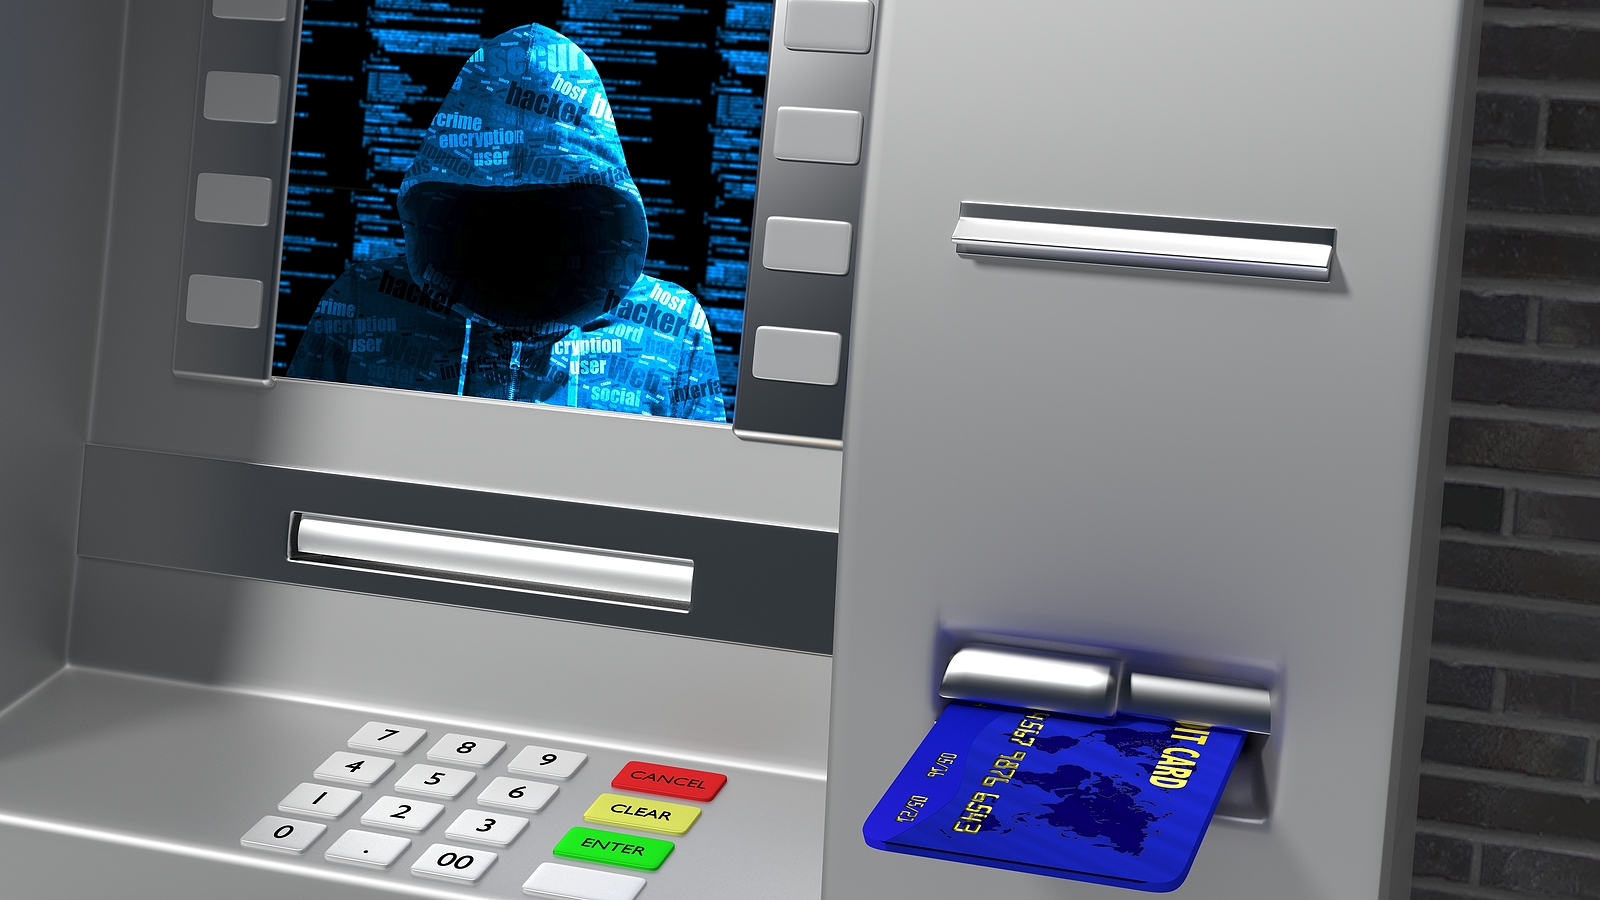 ATM hacking